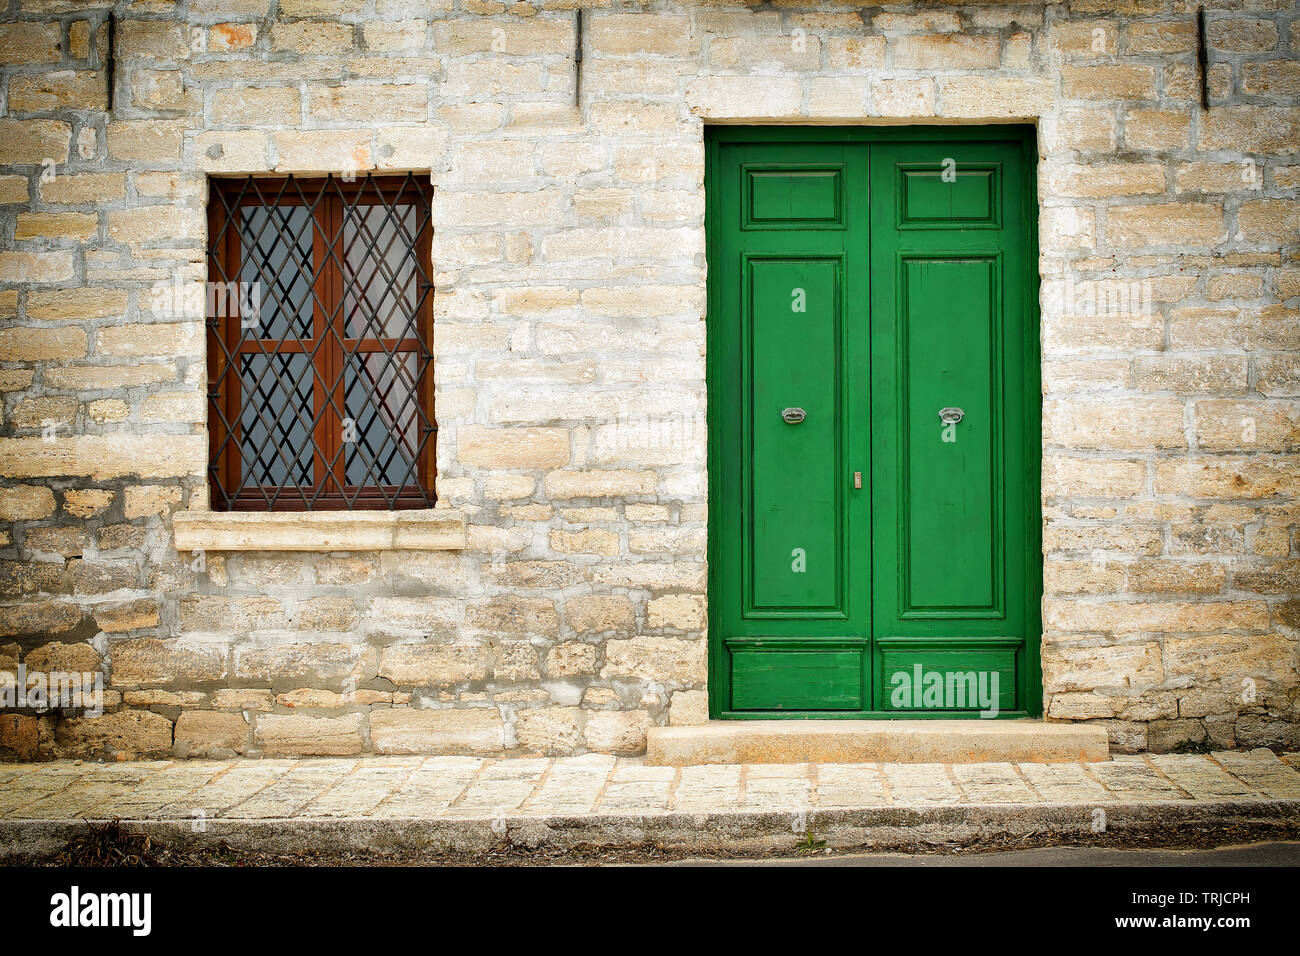 Architektur Details aus der Renaissance - grün Holz- Fenster und Tür mit einem Gitter eines Steinhauses in Kavarna Stadt gemalt, Bulgarien Stockfoto